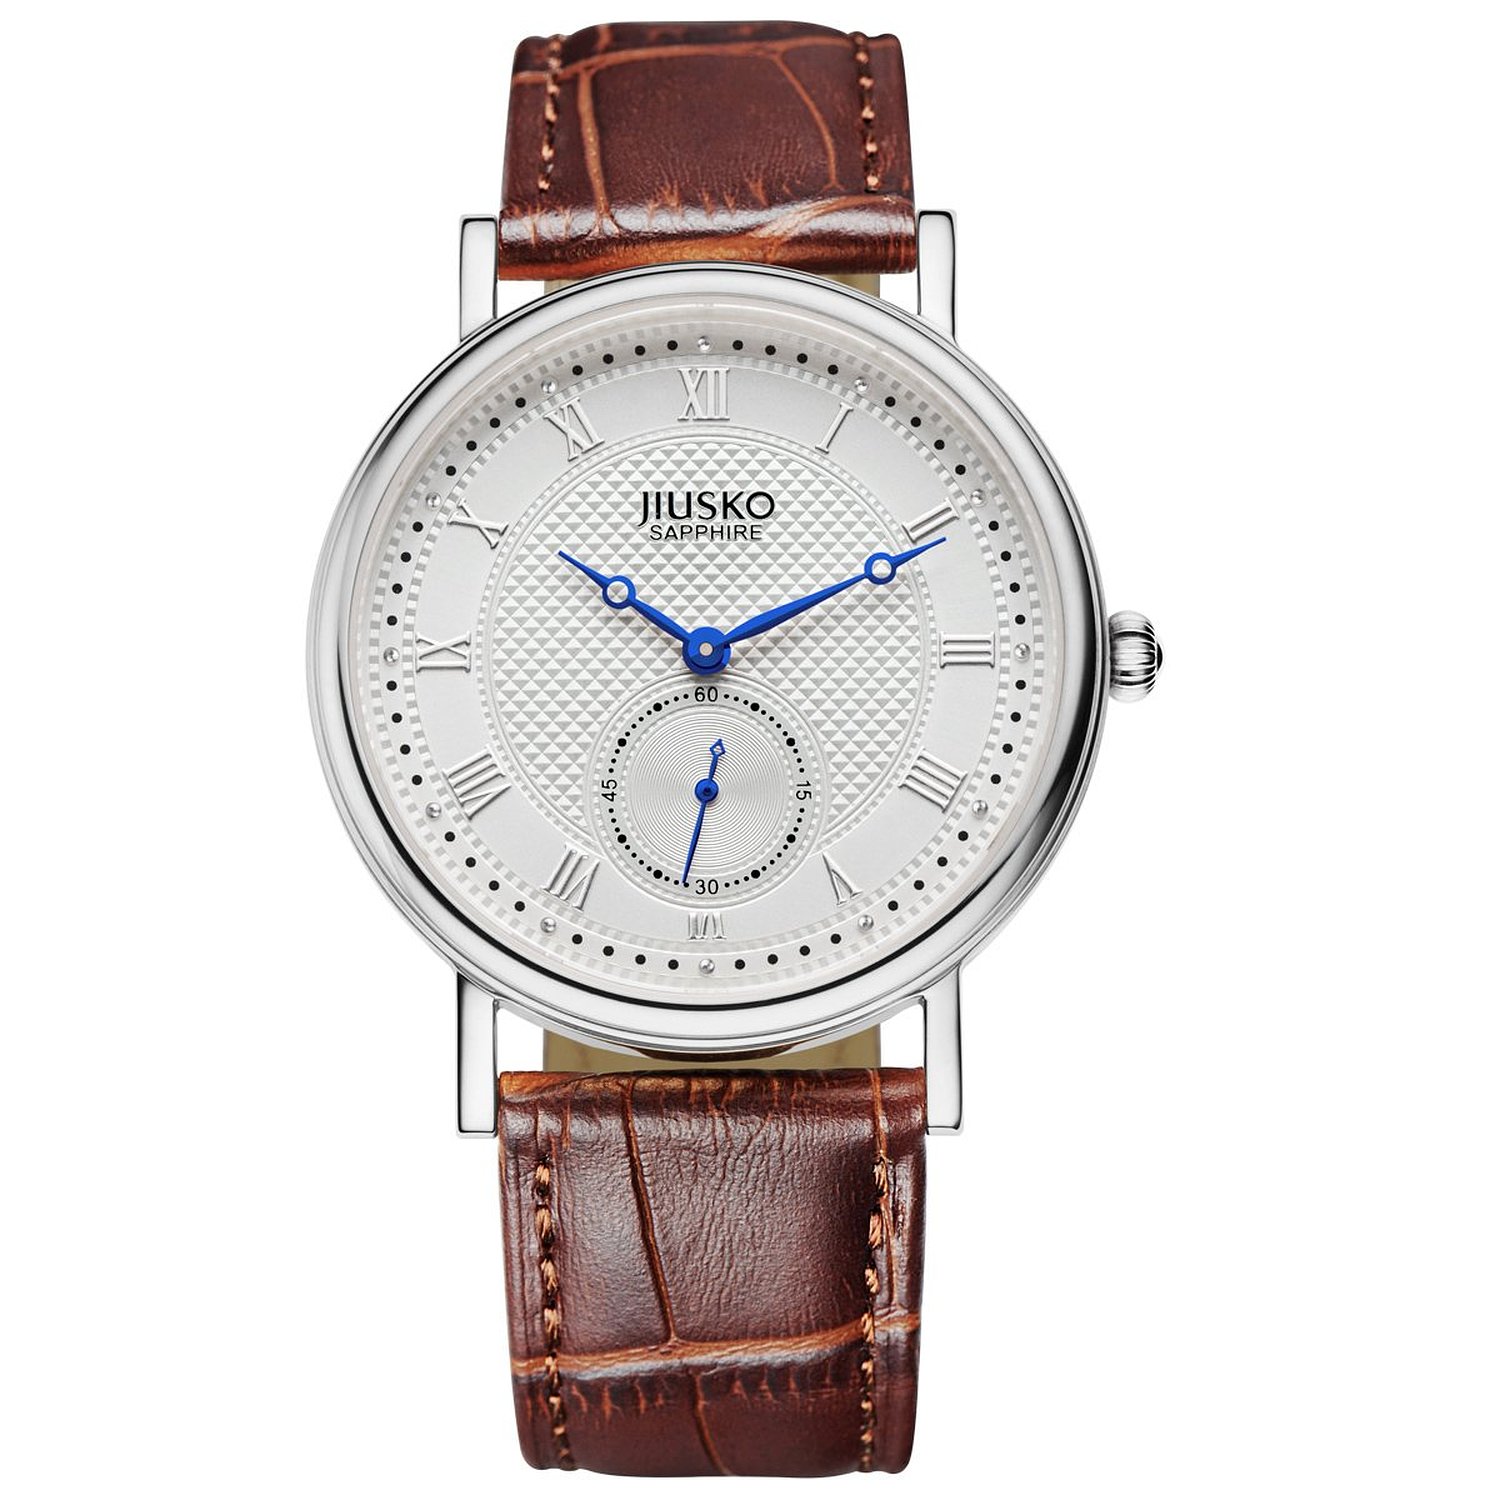 Jiusko Mens Classic Roman Numbers Brown Leather Quartz Wrist Watch 132MS0107